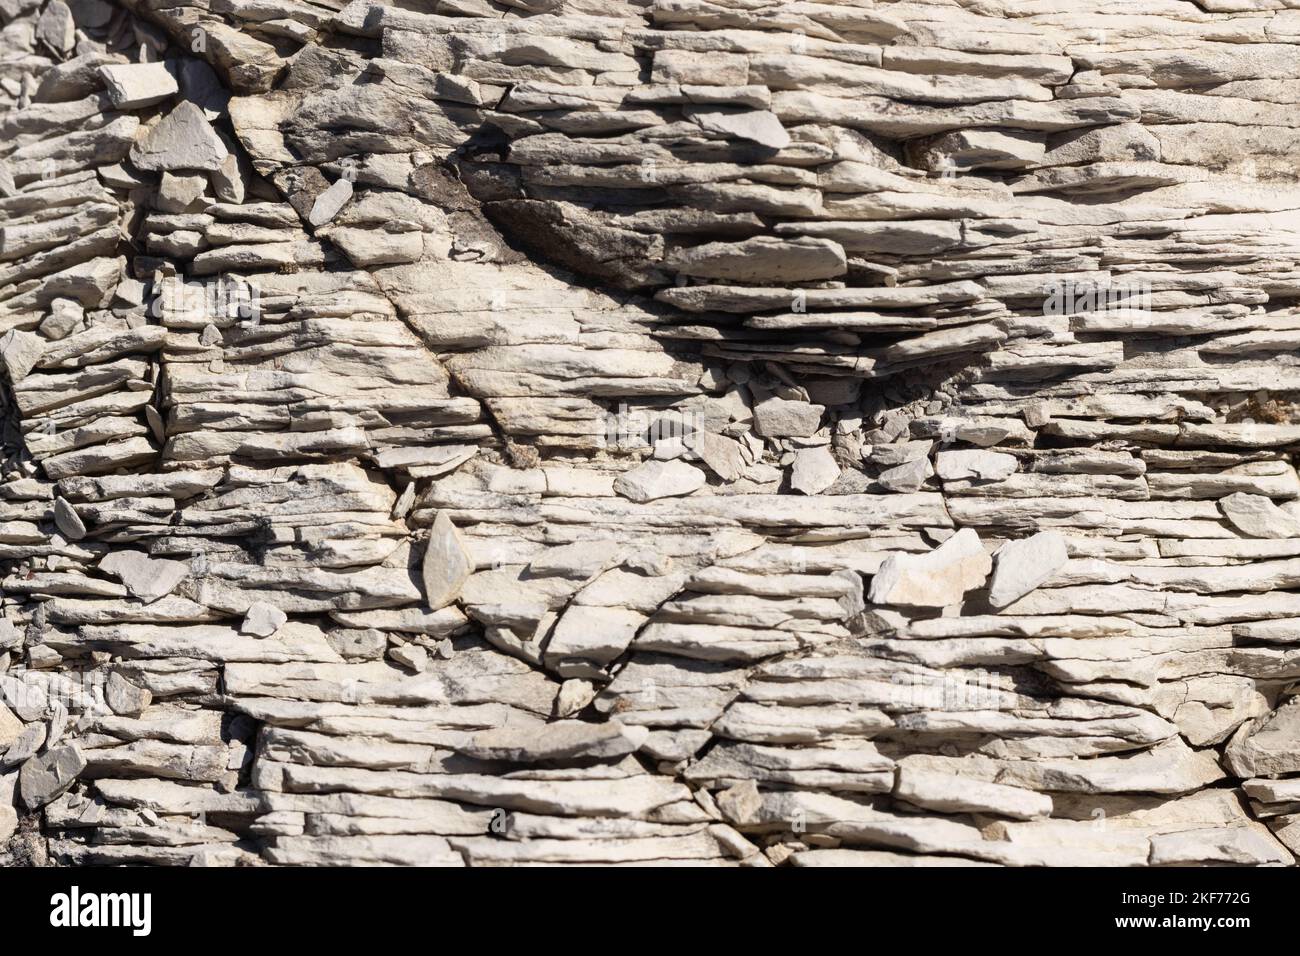 Natural rock texture on mountain ridge, Appennini, Italy Stock Photo